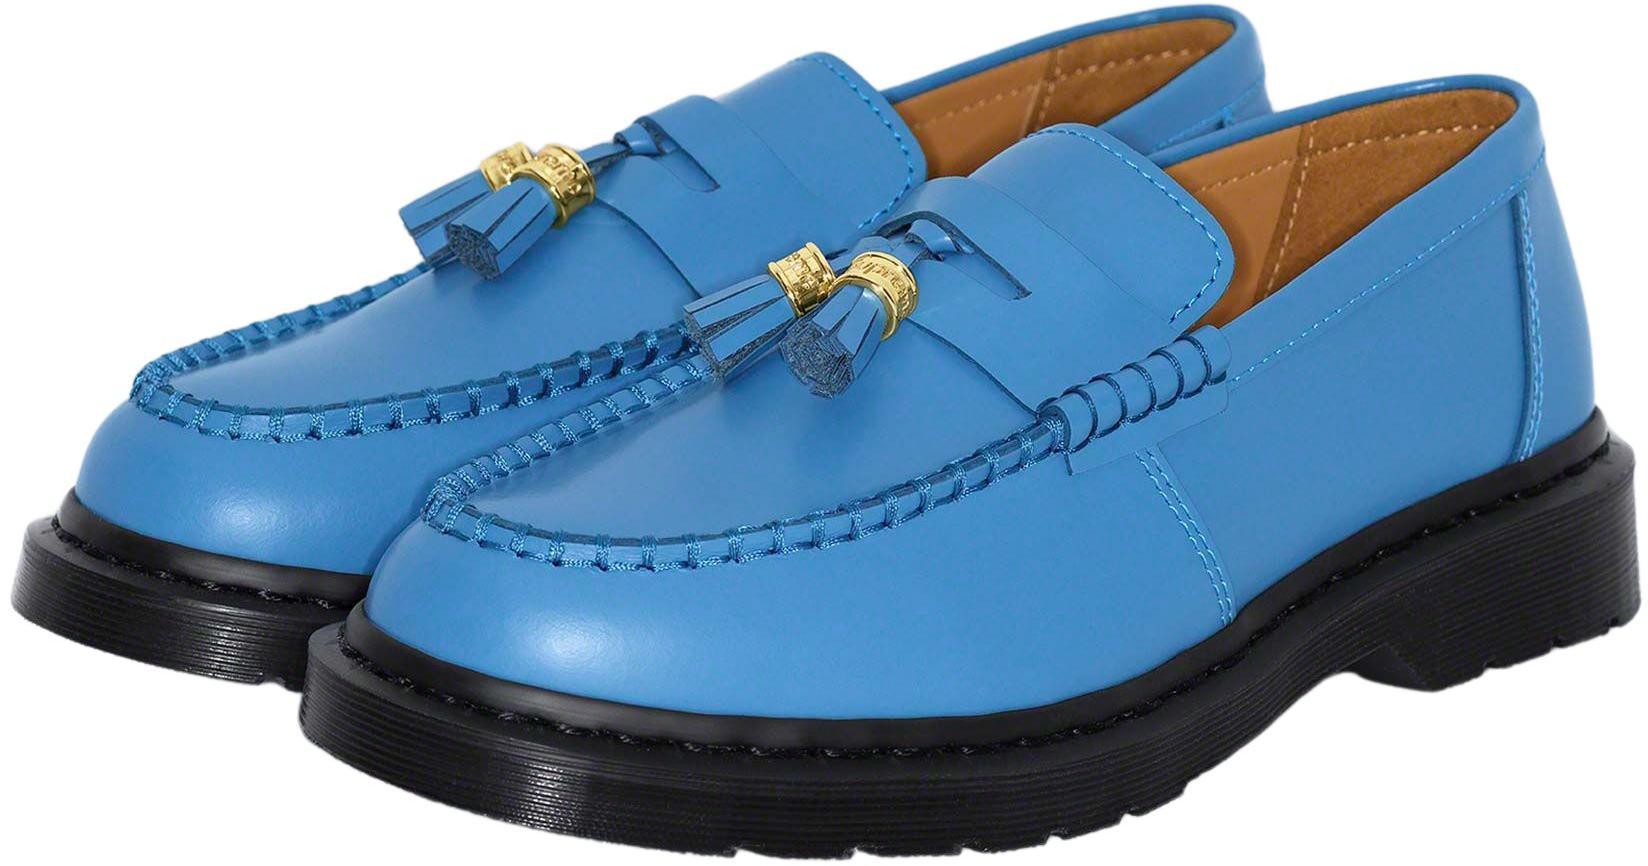 Dr. Martens Supreme®/dr. Martens® Penton Tassel Loafer Blue | Lyst